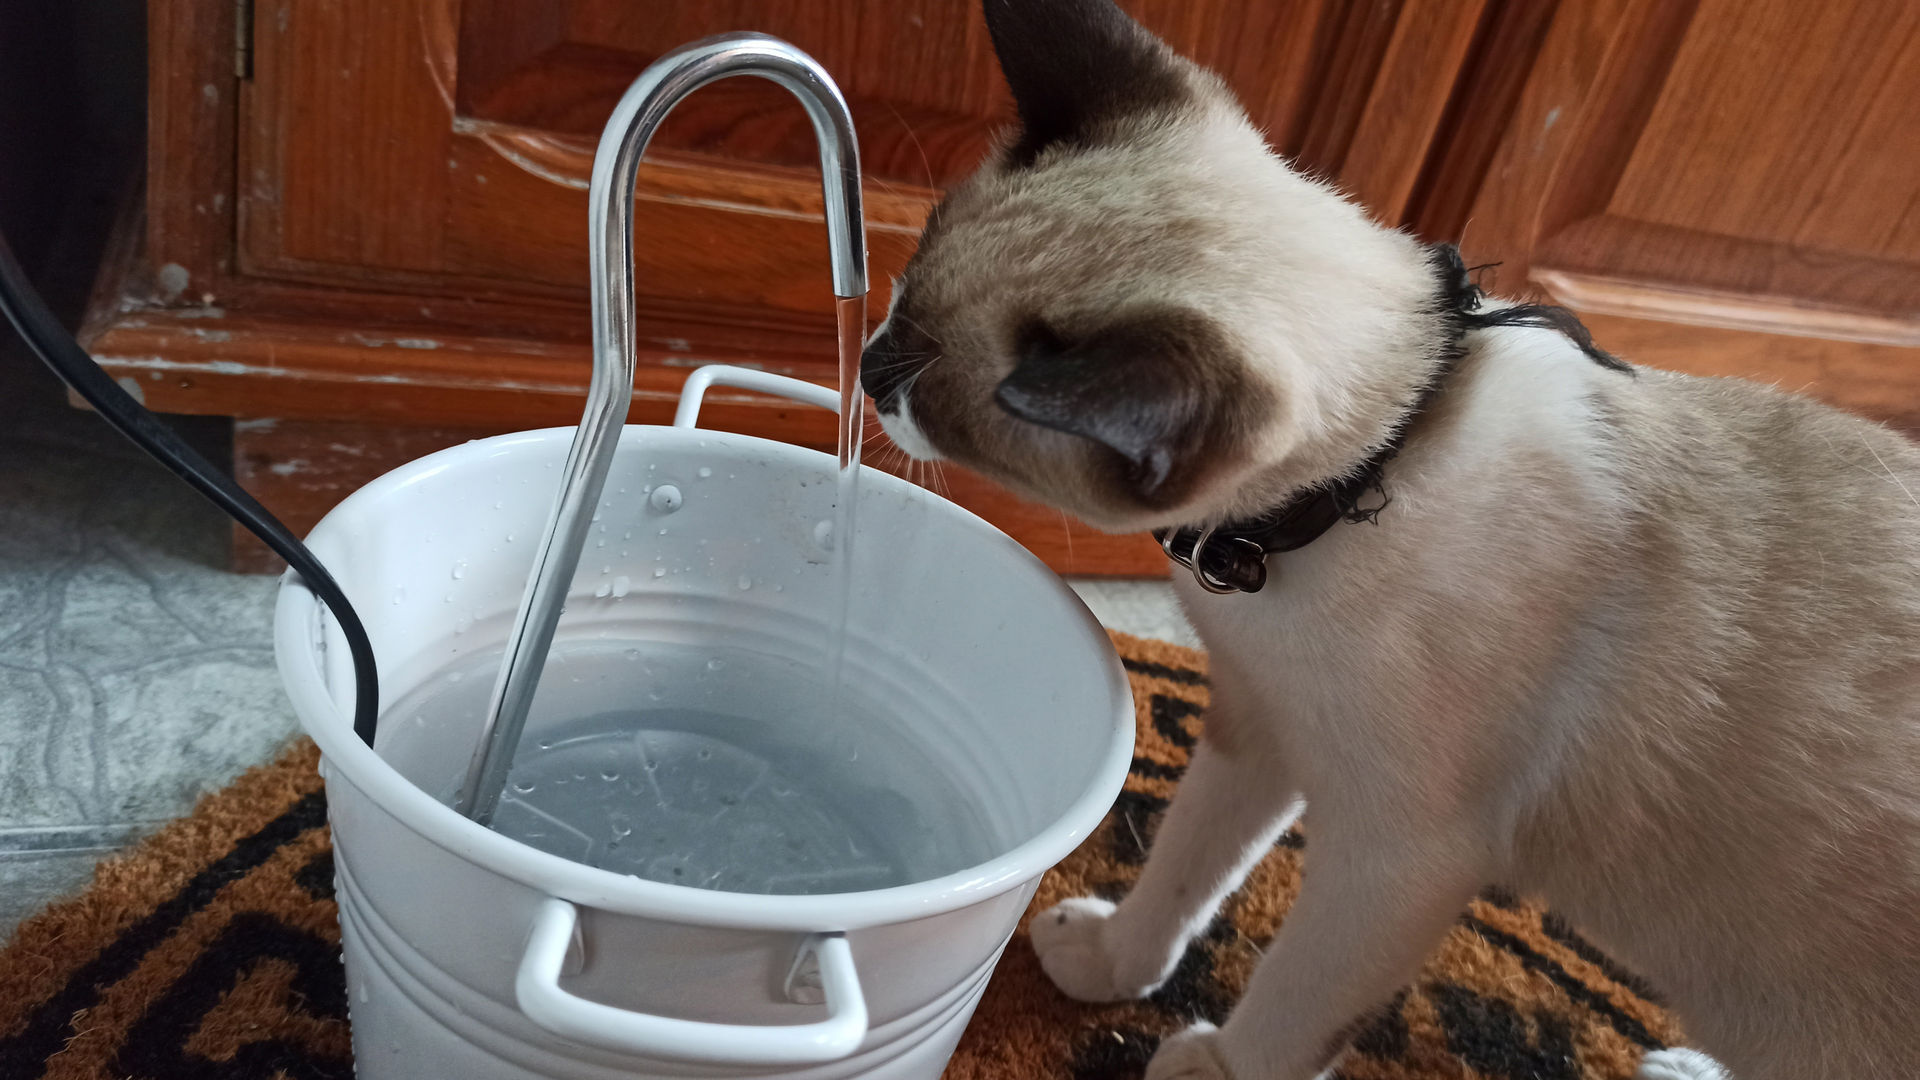 Las mejores fuentes para gatos para beber agua en casa